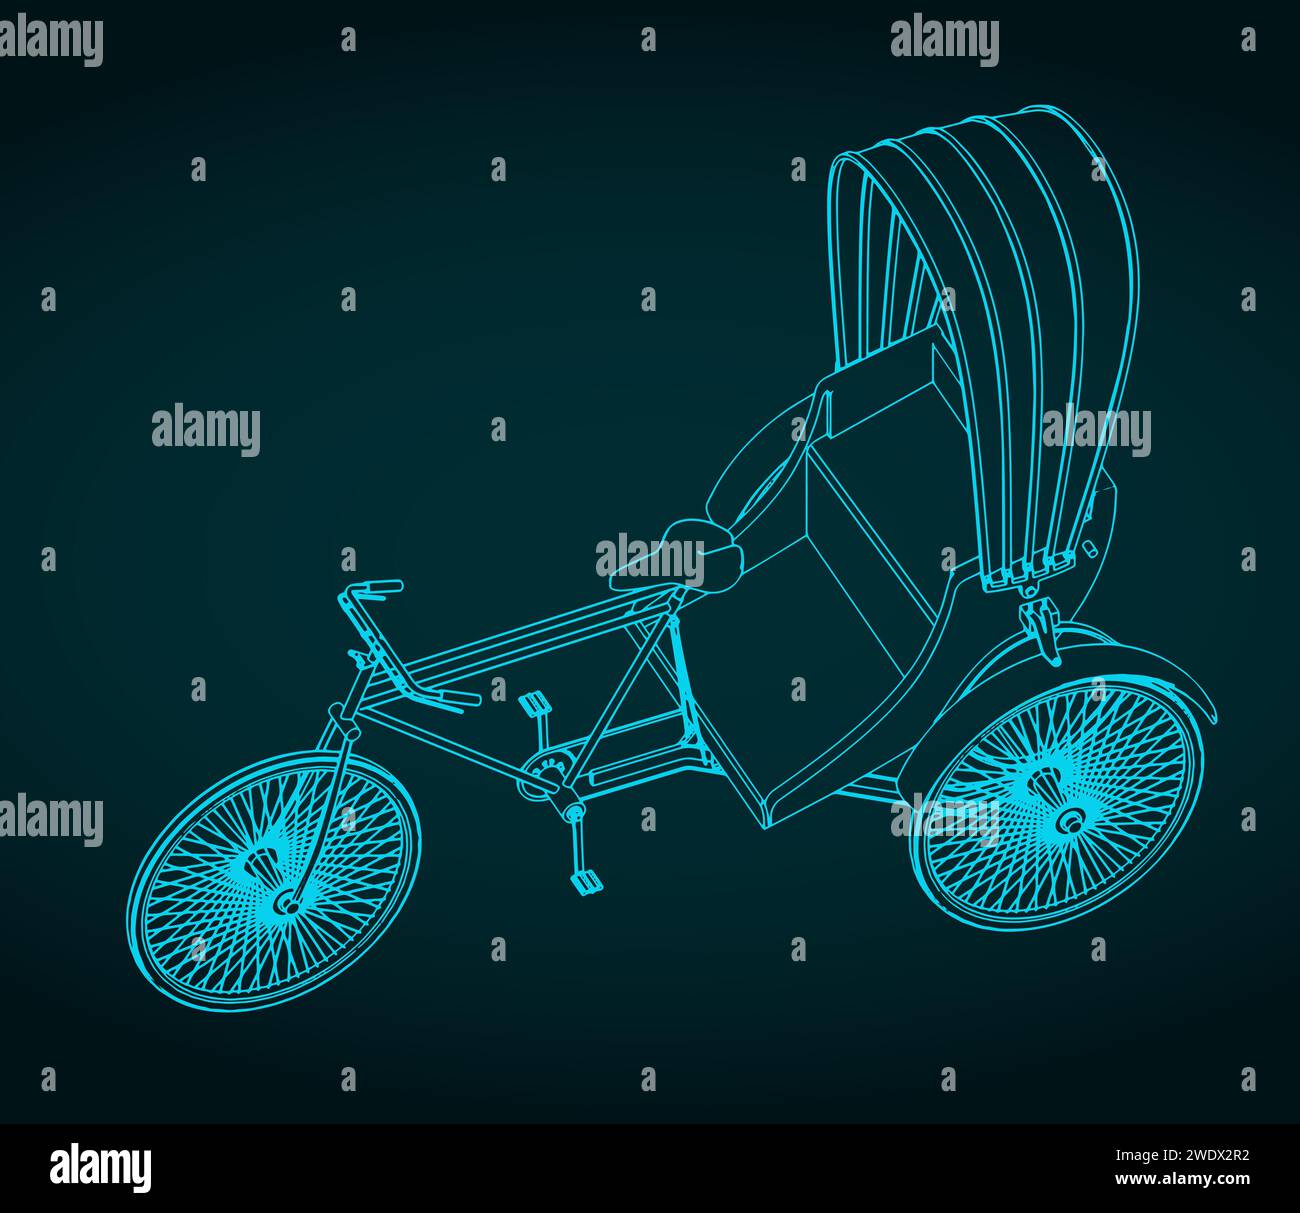 Stilisierte Vektor-Illustration des Blueprints eines dreirädrigen Mannfahrzeugs Stock Vektor